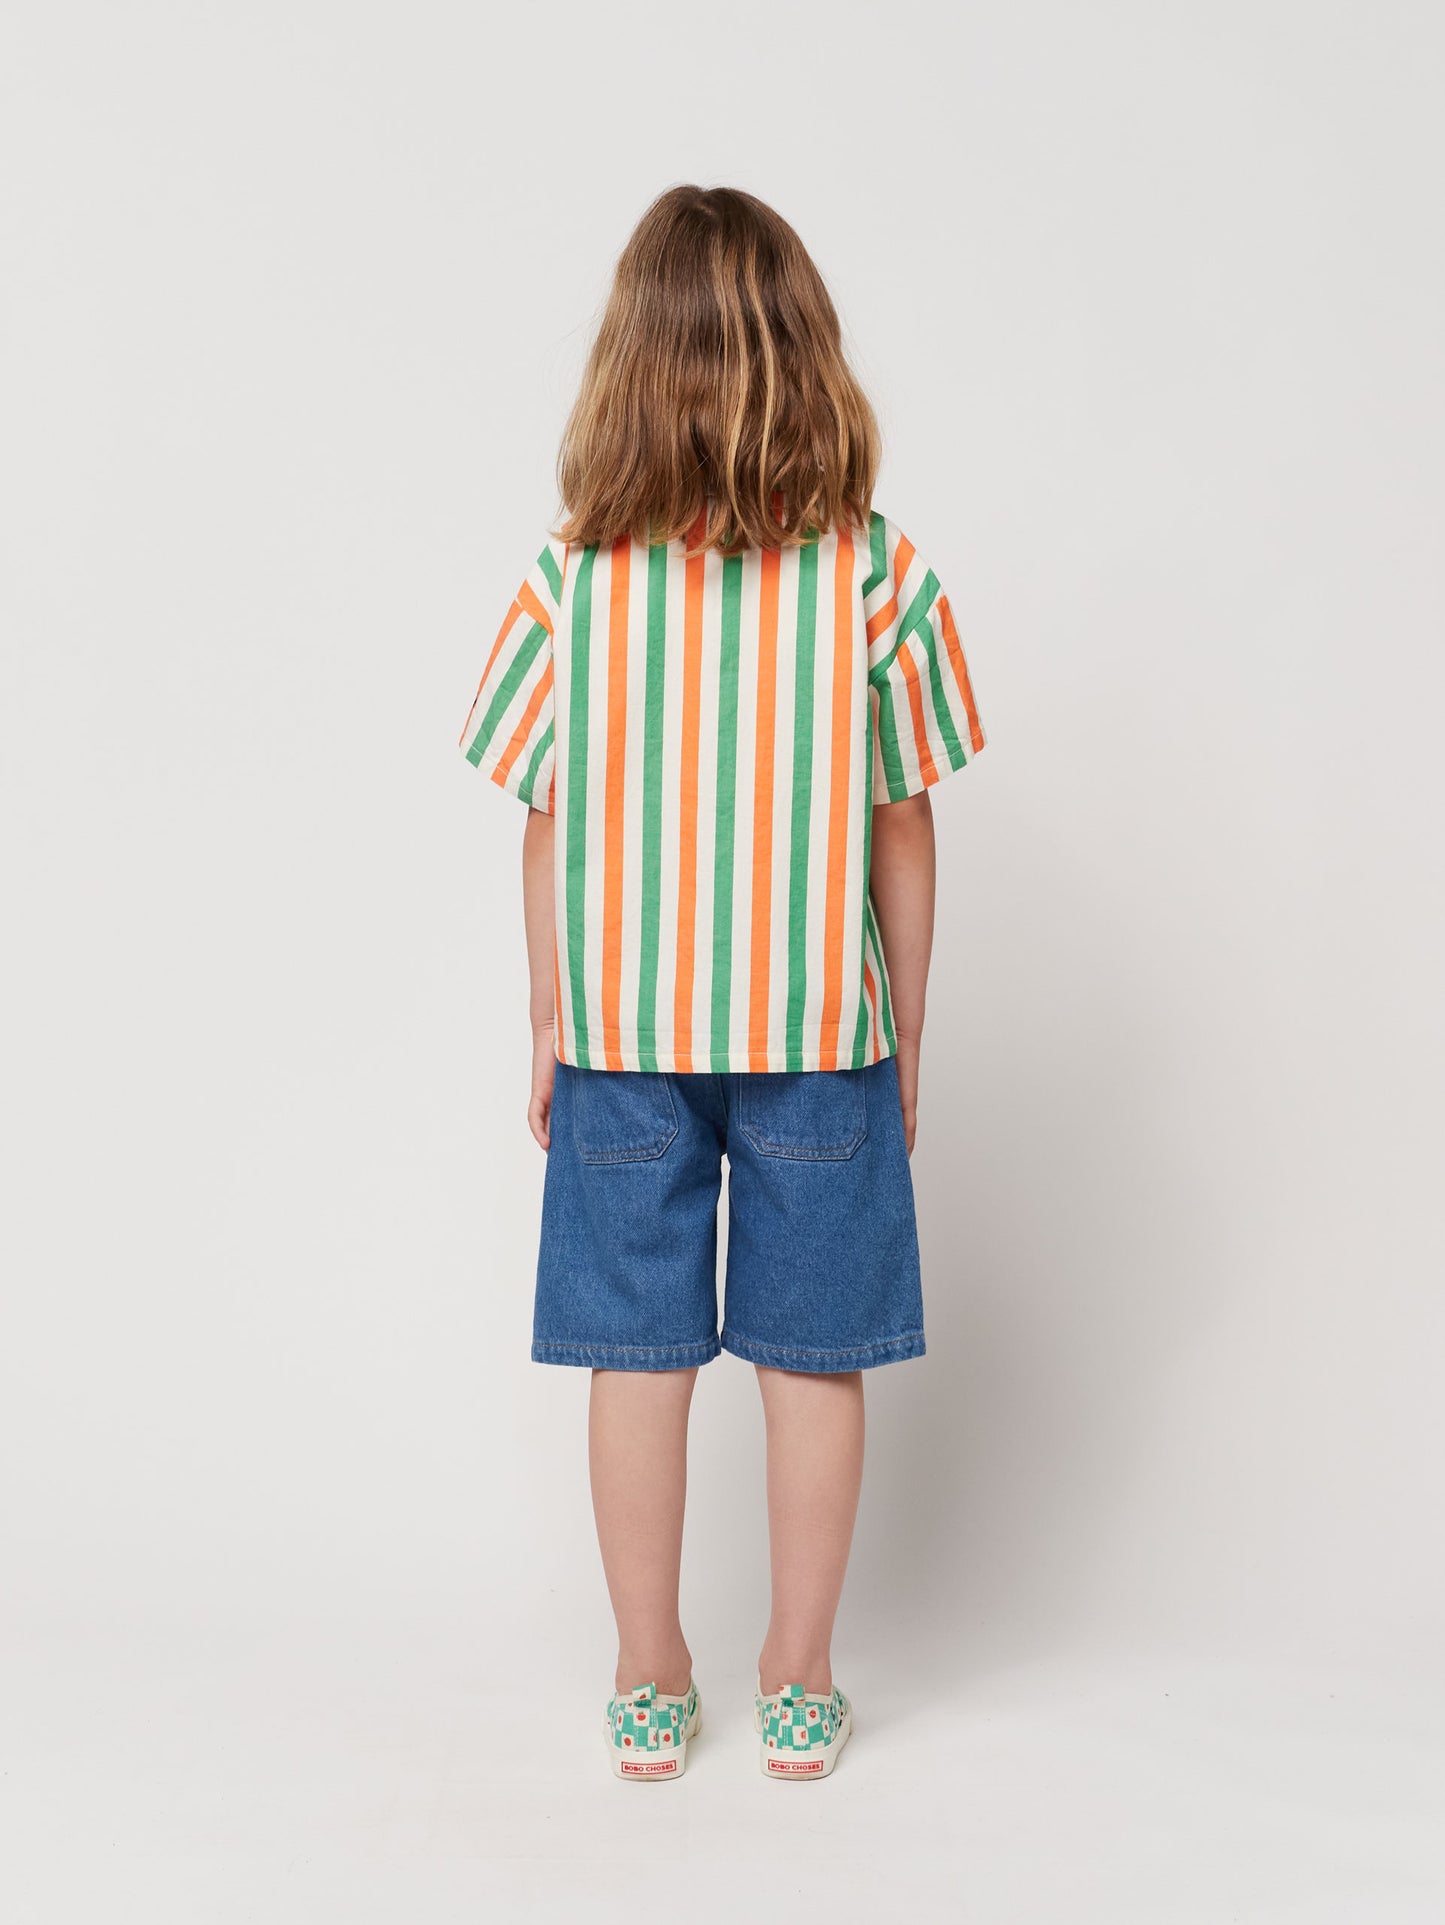 Vertical Stripes woven shirt